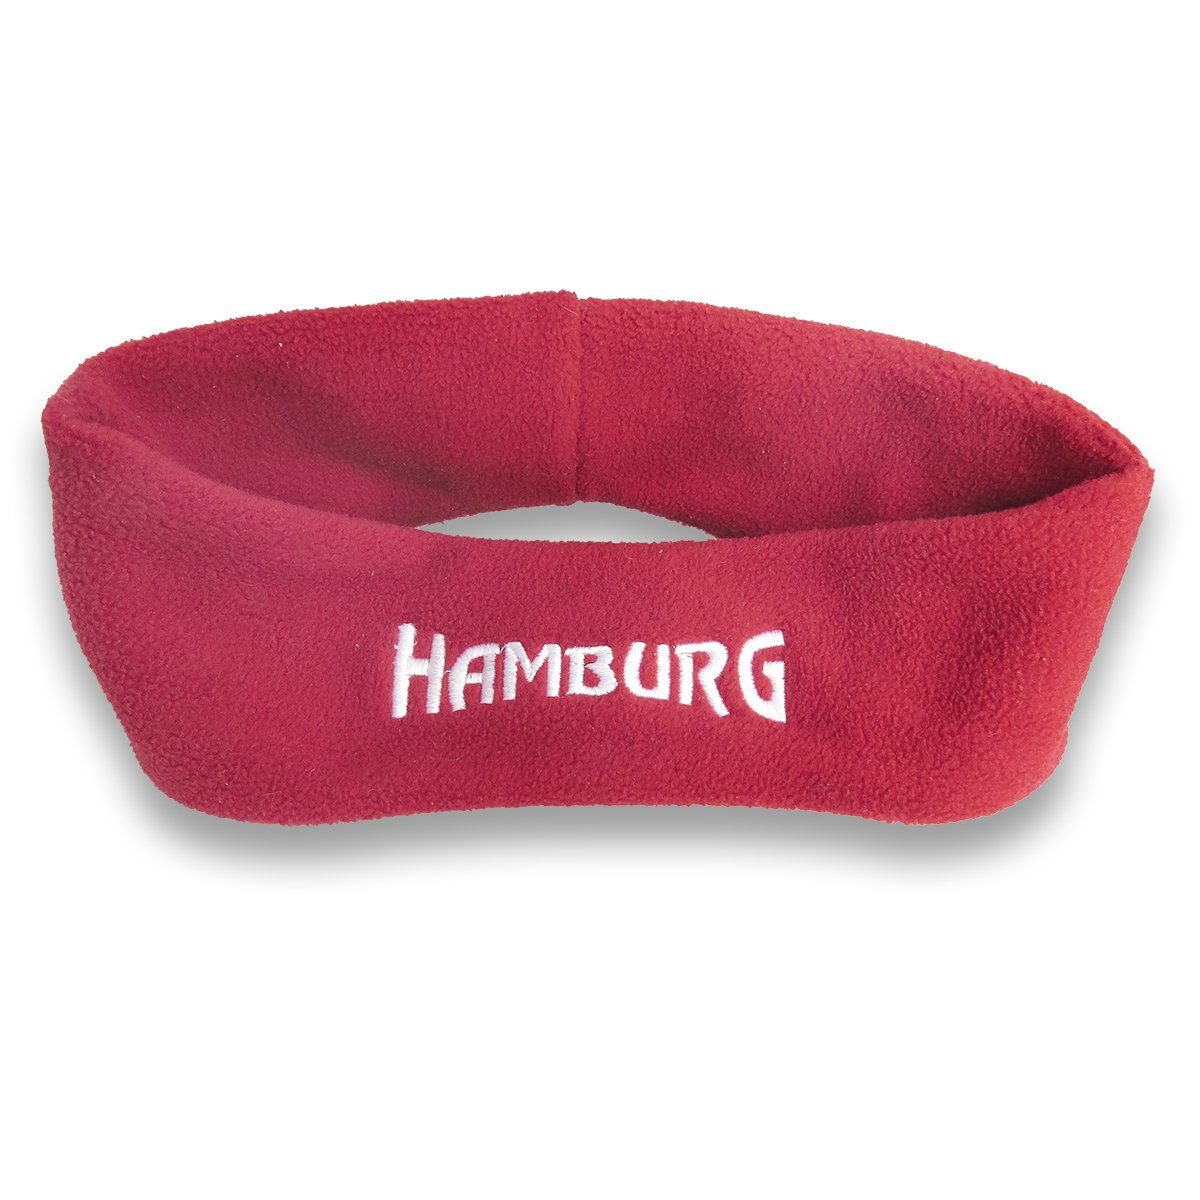 Sonia Originelli Stirnband Stirnband kuschelig weich Rot bestickt Marine, "Hamburg" Fleece